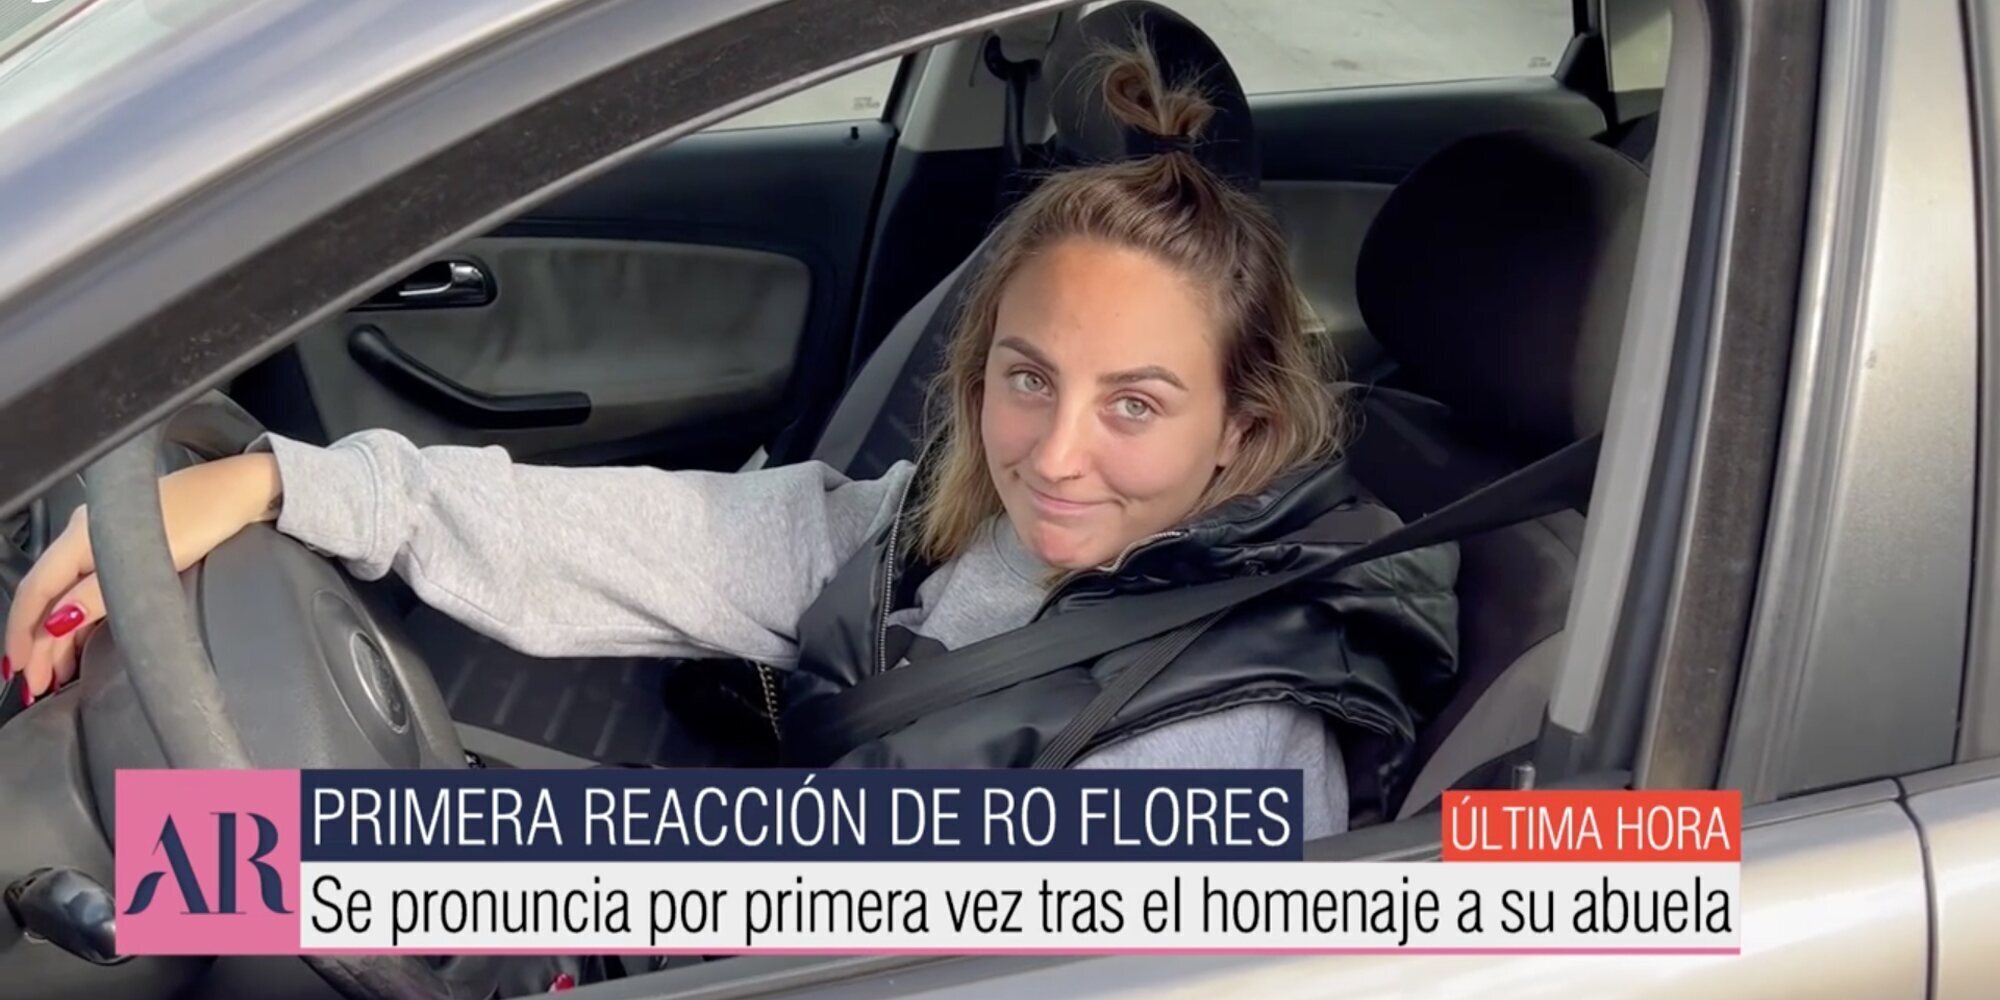 Esta ha sido la reacción de Rocío Flores al homenaje de su madre a Rocío Jurado